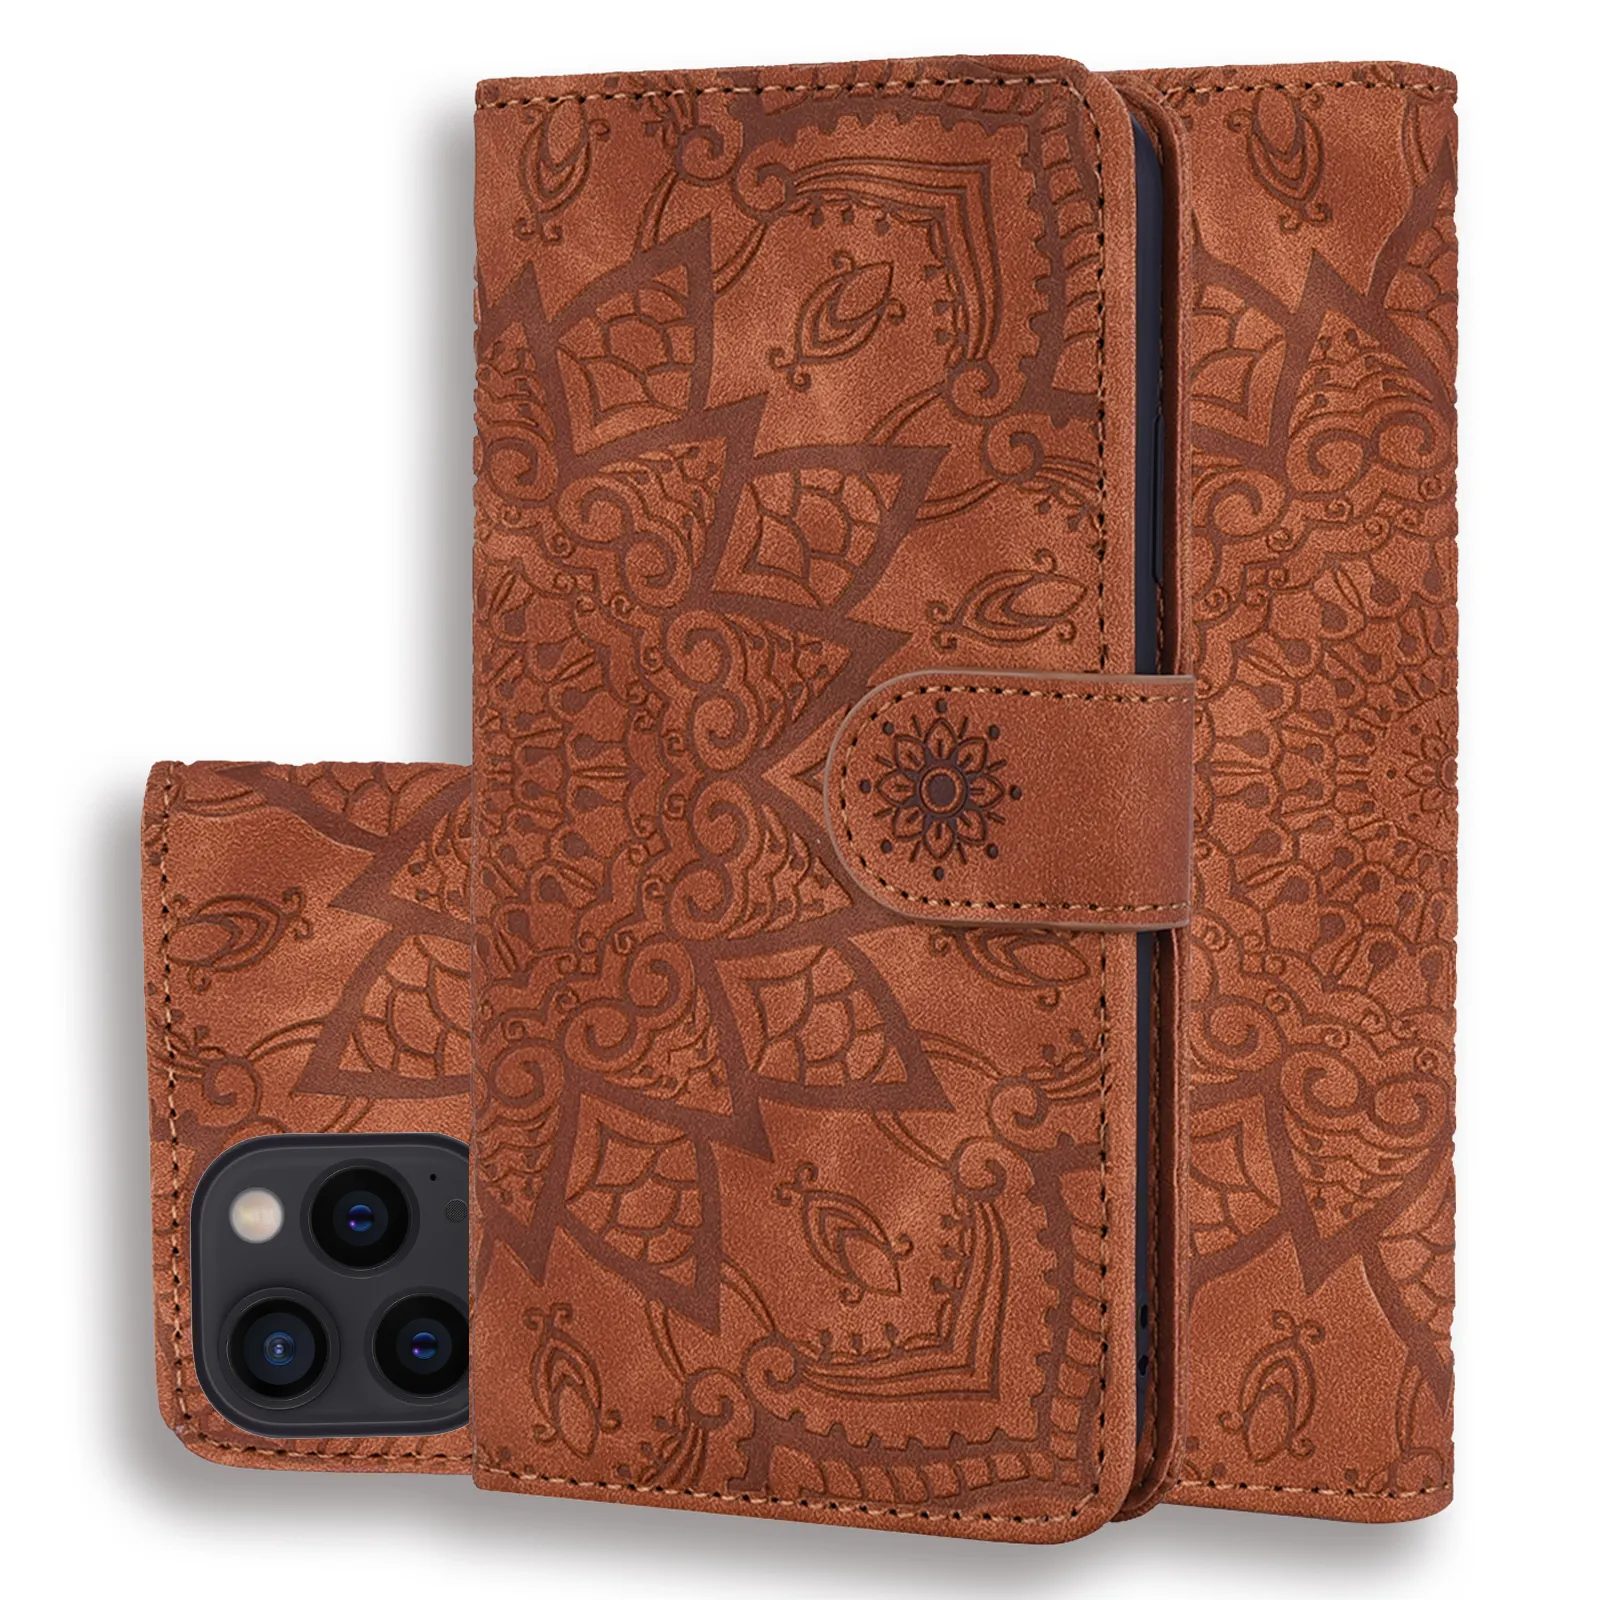 Fabbrica Drop shipping custodia in pelle di alta qualità custodia a portafoglio Mandala fiori modello per Iphone 15 14 13 12 11 pro max Case